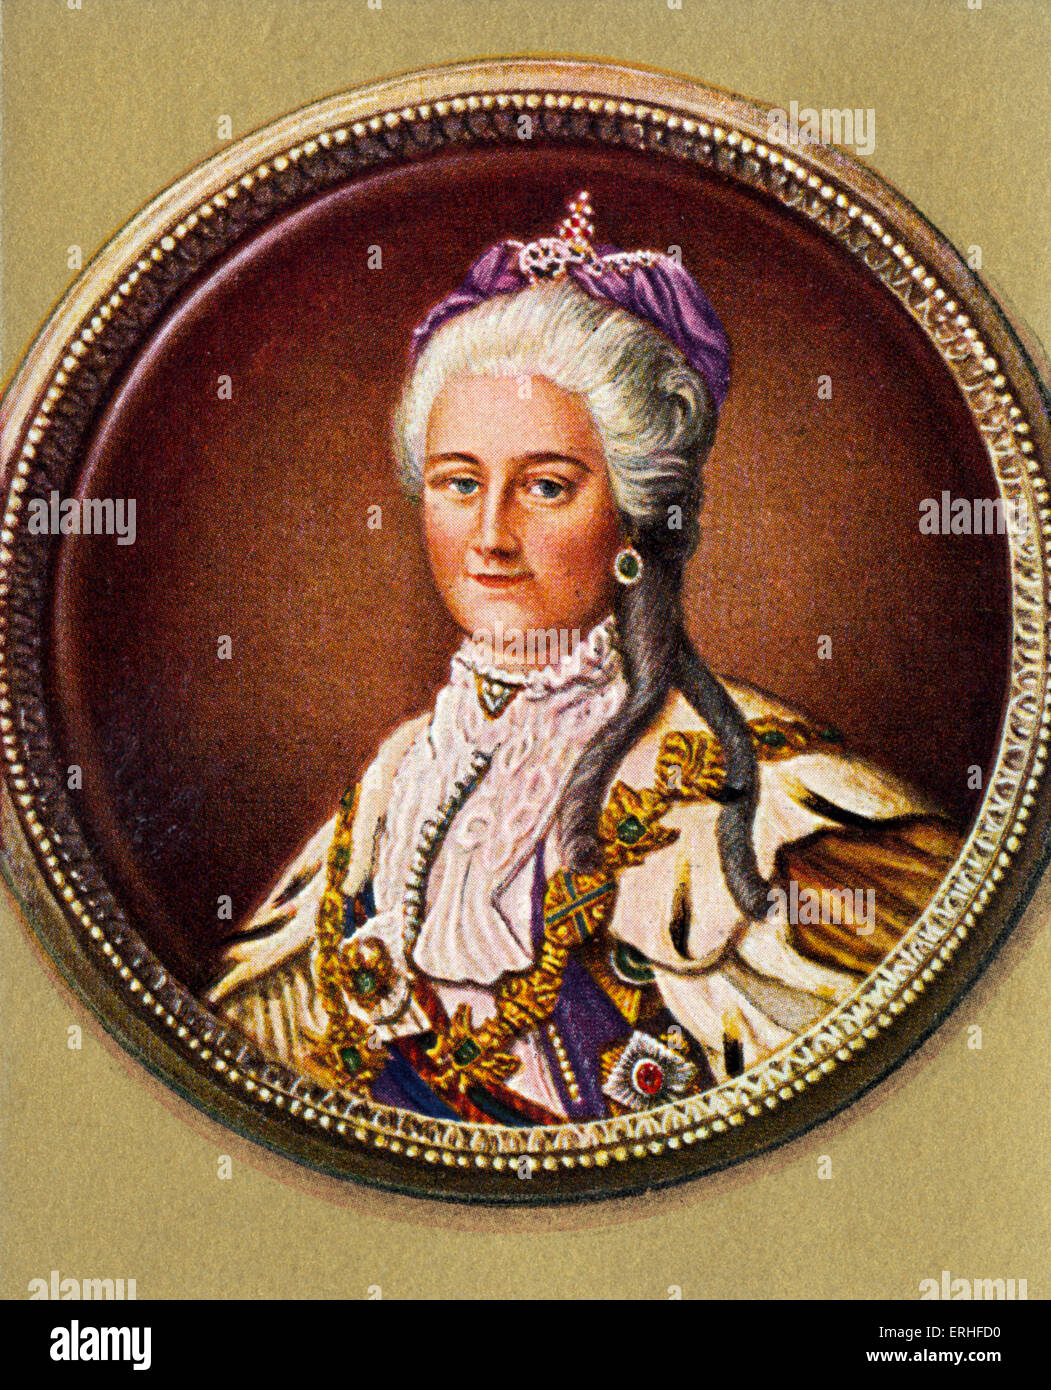 Katharina die große von Russland, 1729-1796. Kaiserin von Russland. Stockfoto